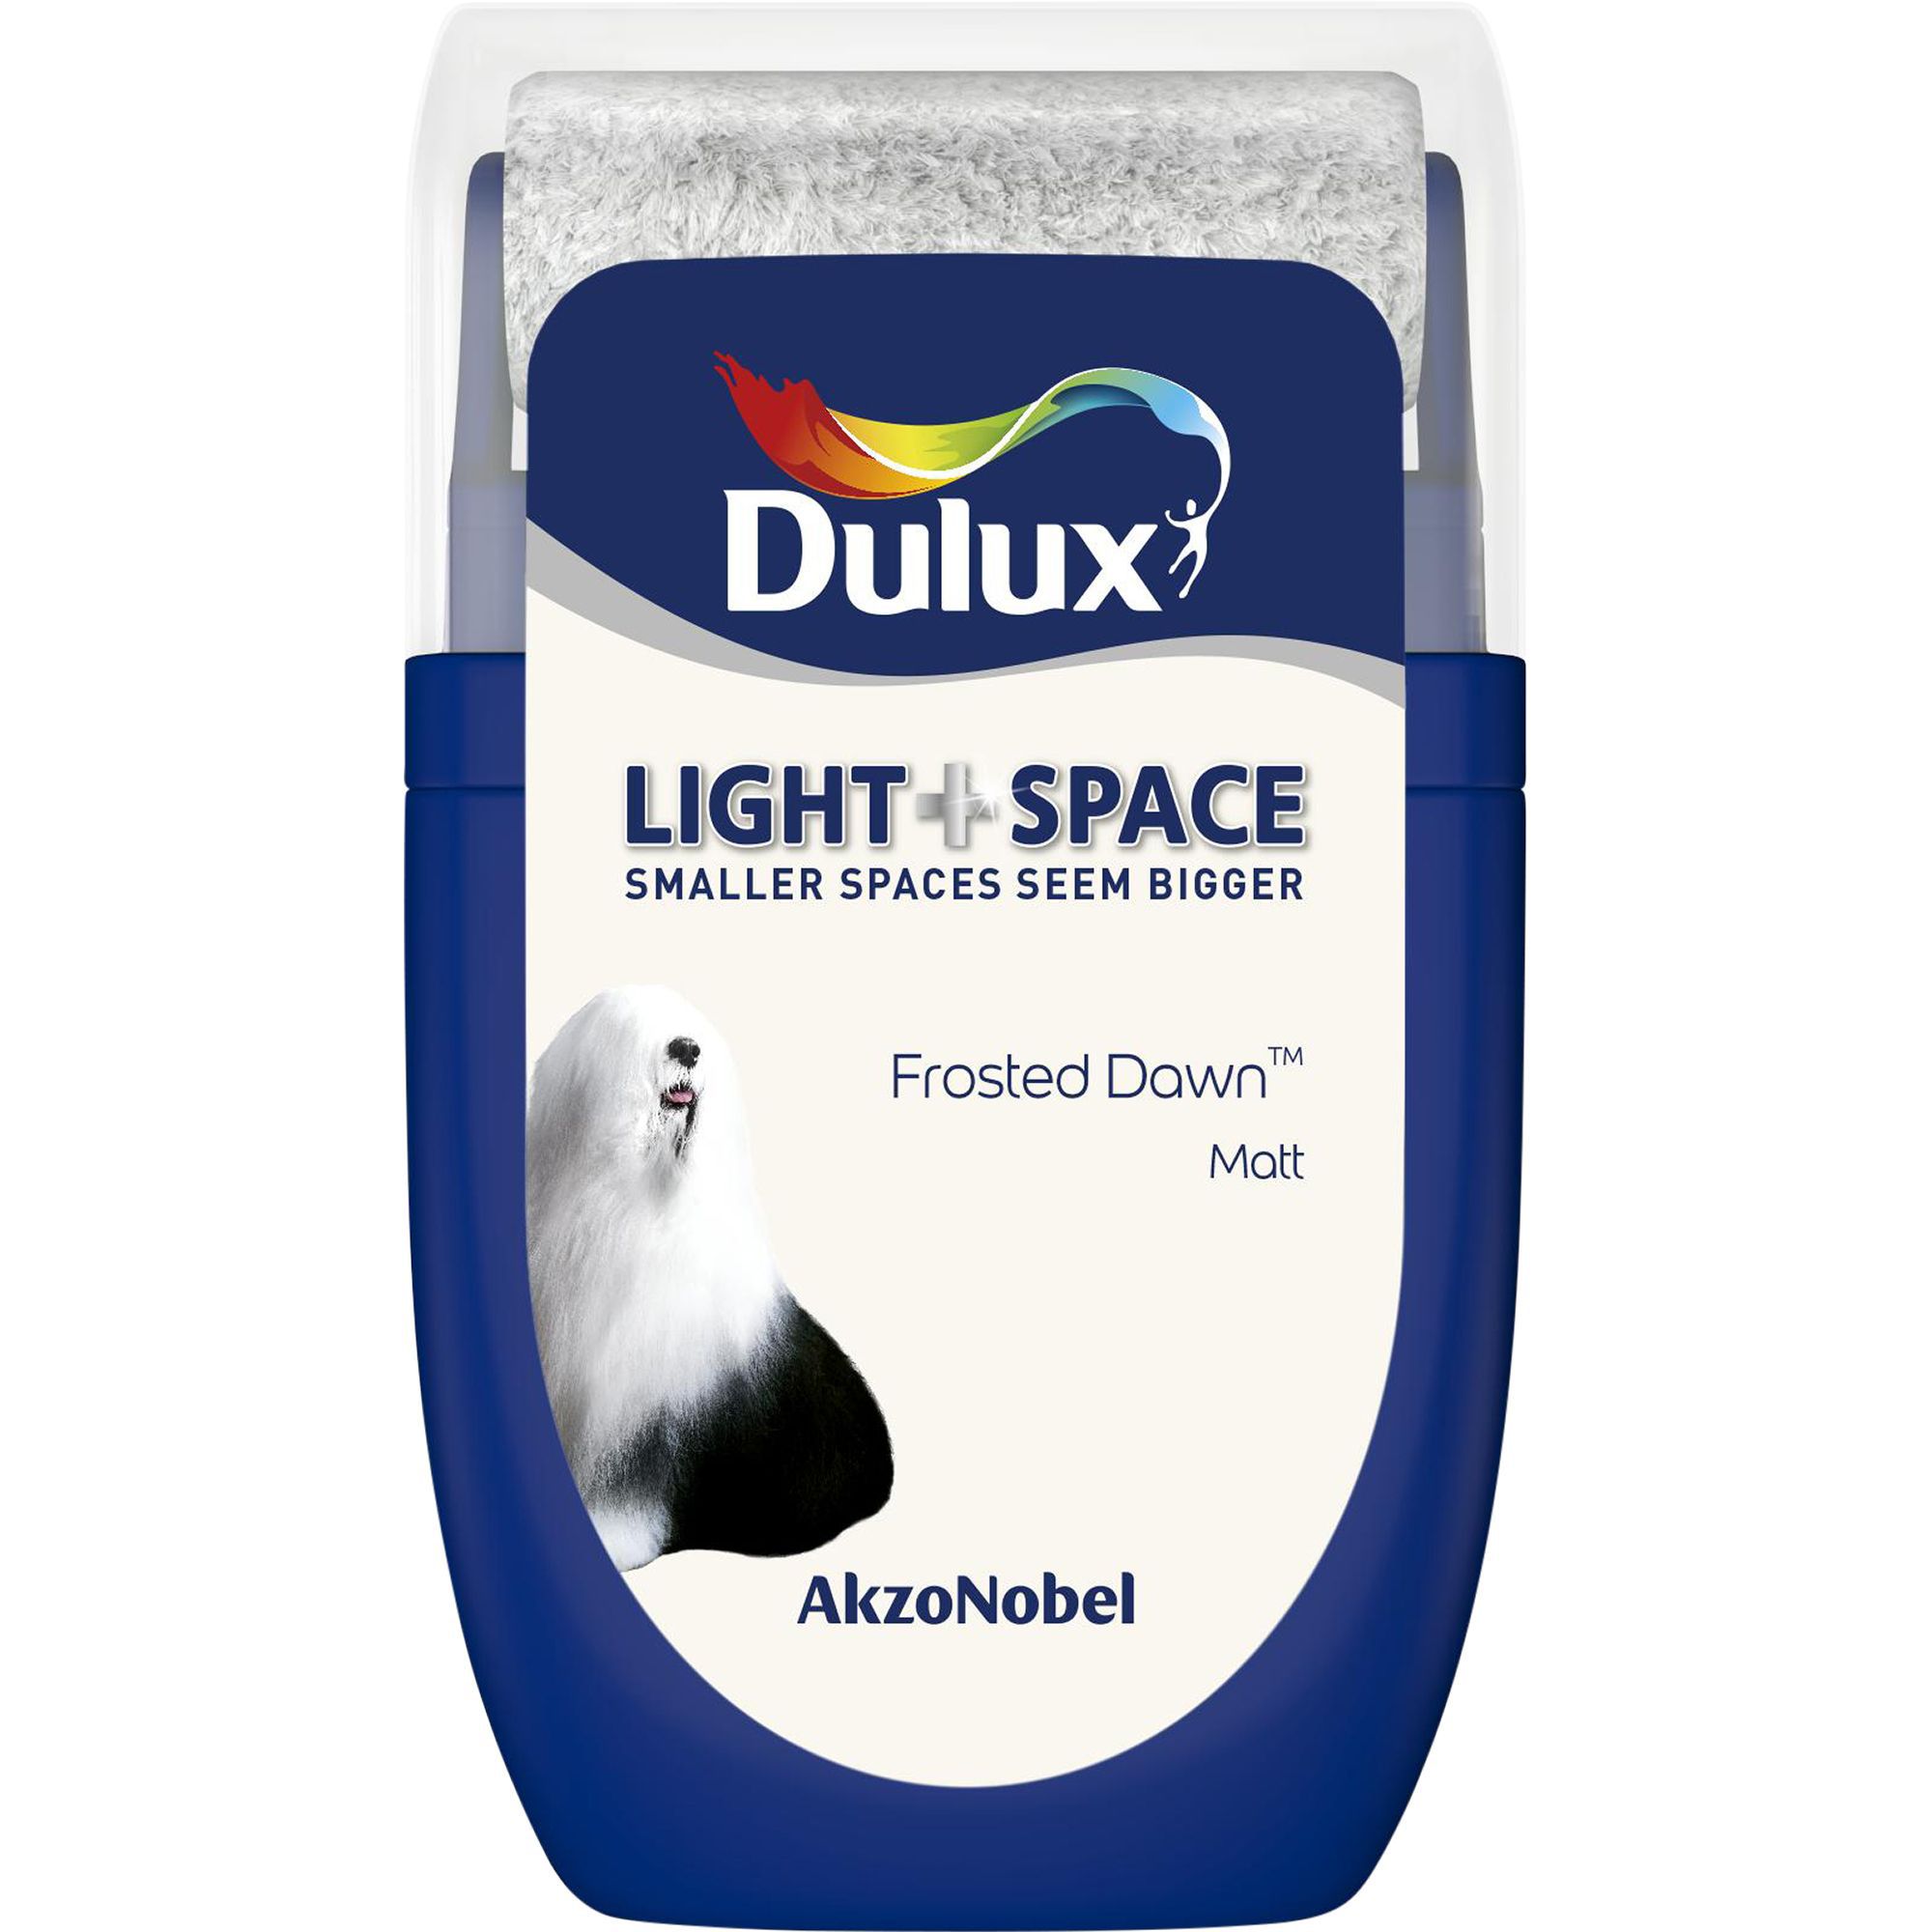 Dulux Light & space Frosted dawn Matt Emulsion paint 30ml Tester pot